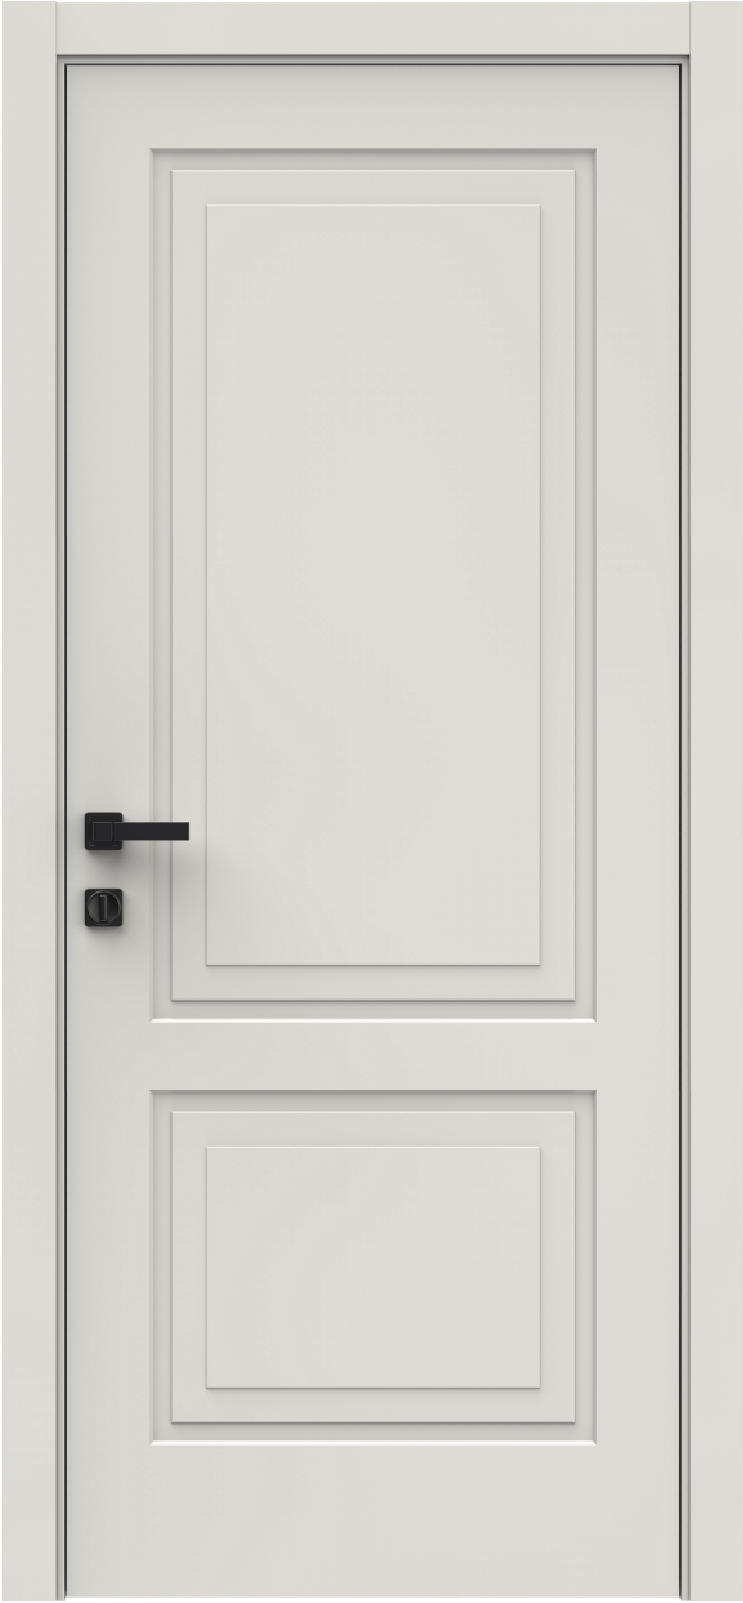 Questdoors Межкомнатная дверь QIZ2, арт. 29415 - фото №1